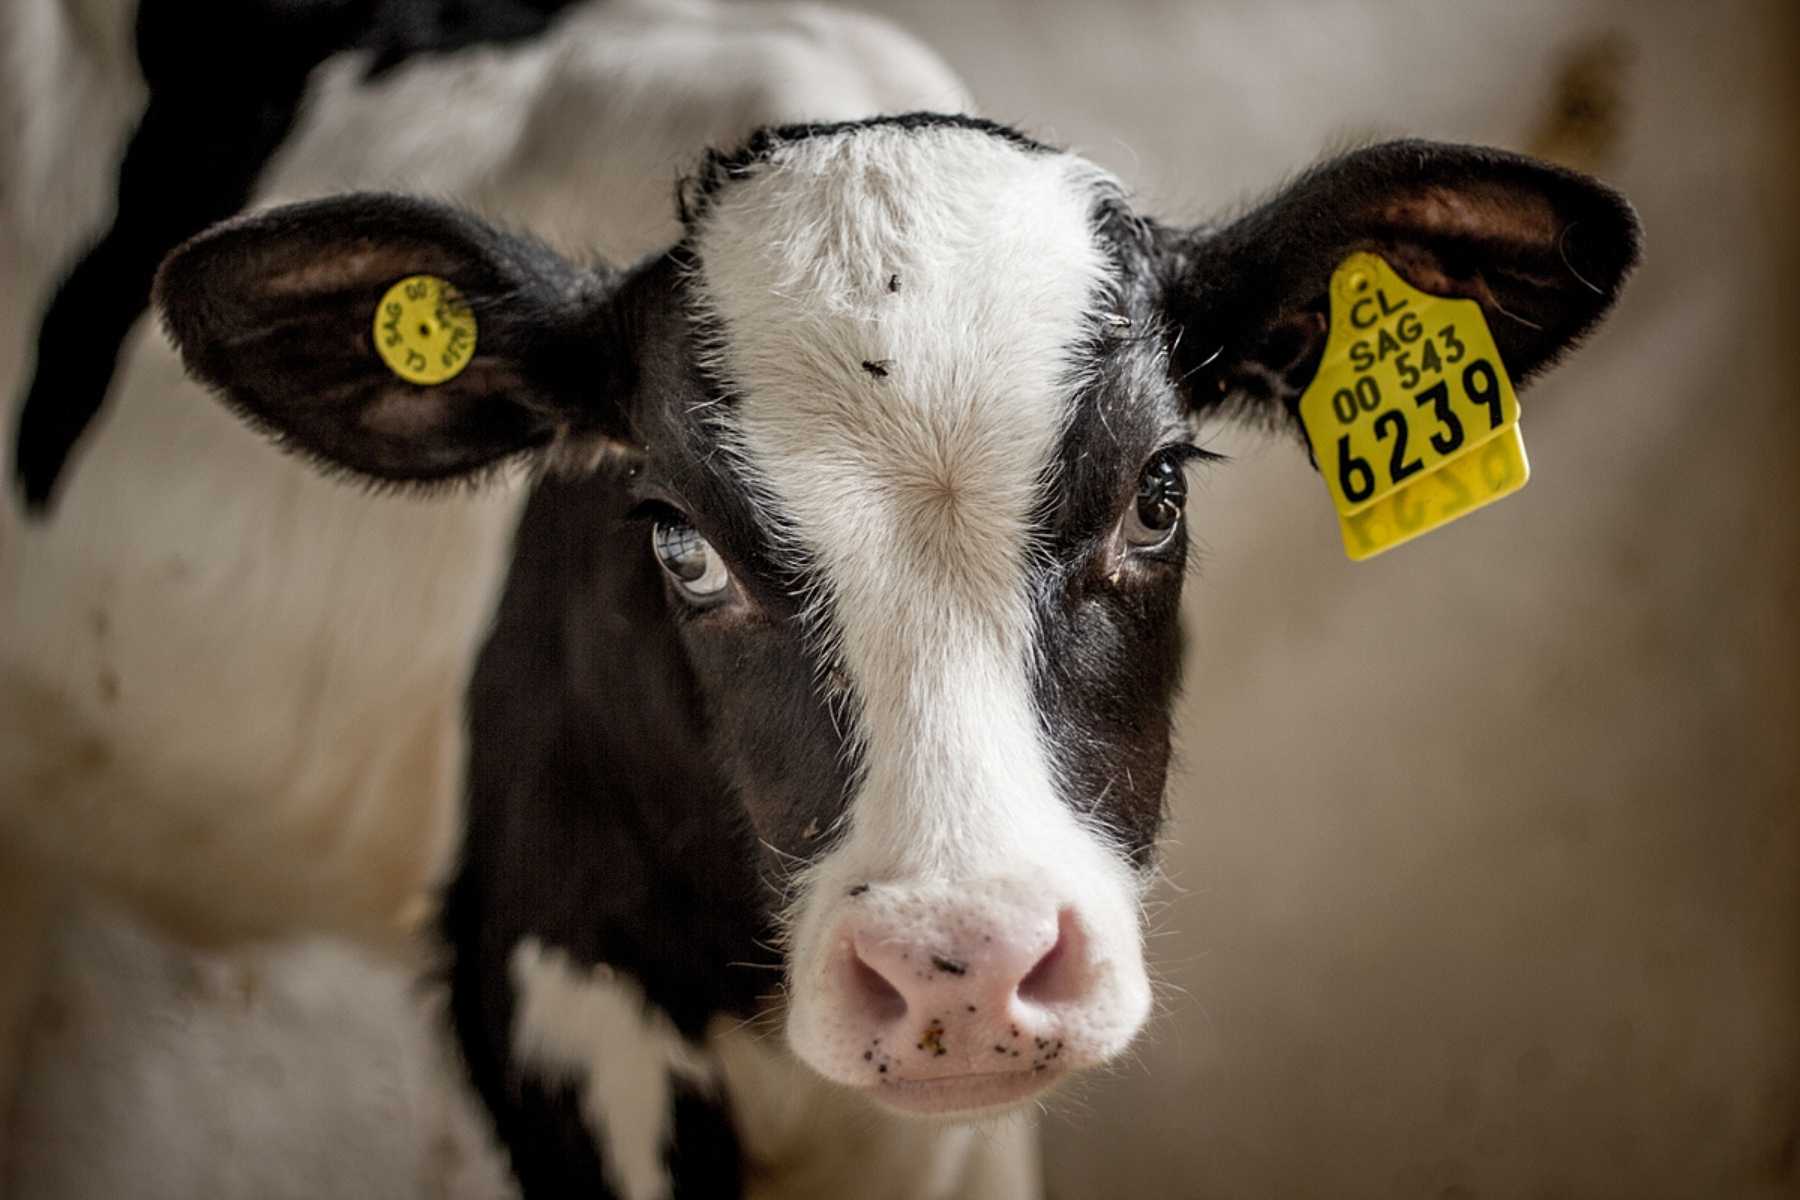 A calf in a stall at a dairy farm.